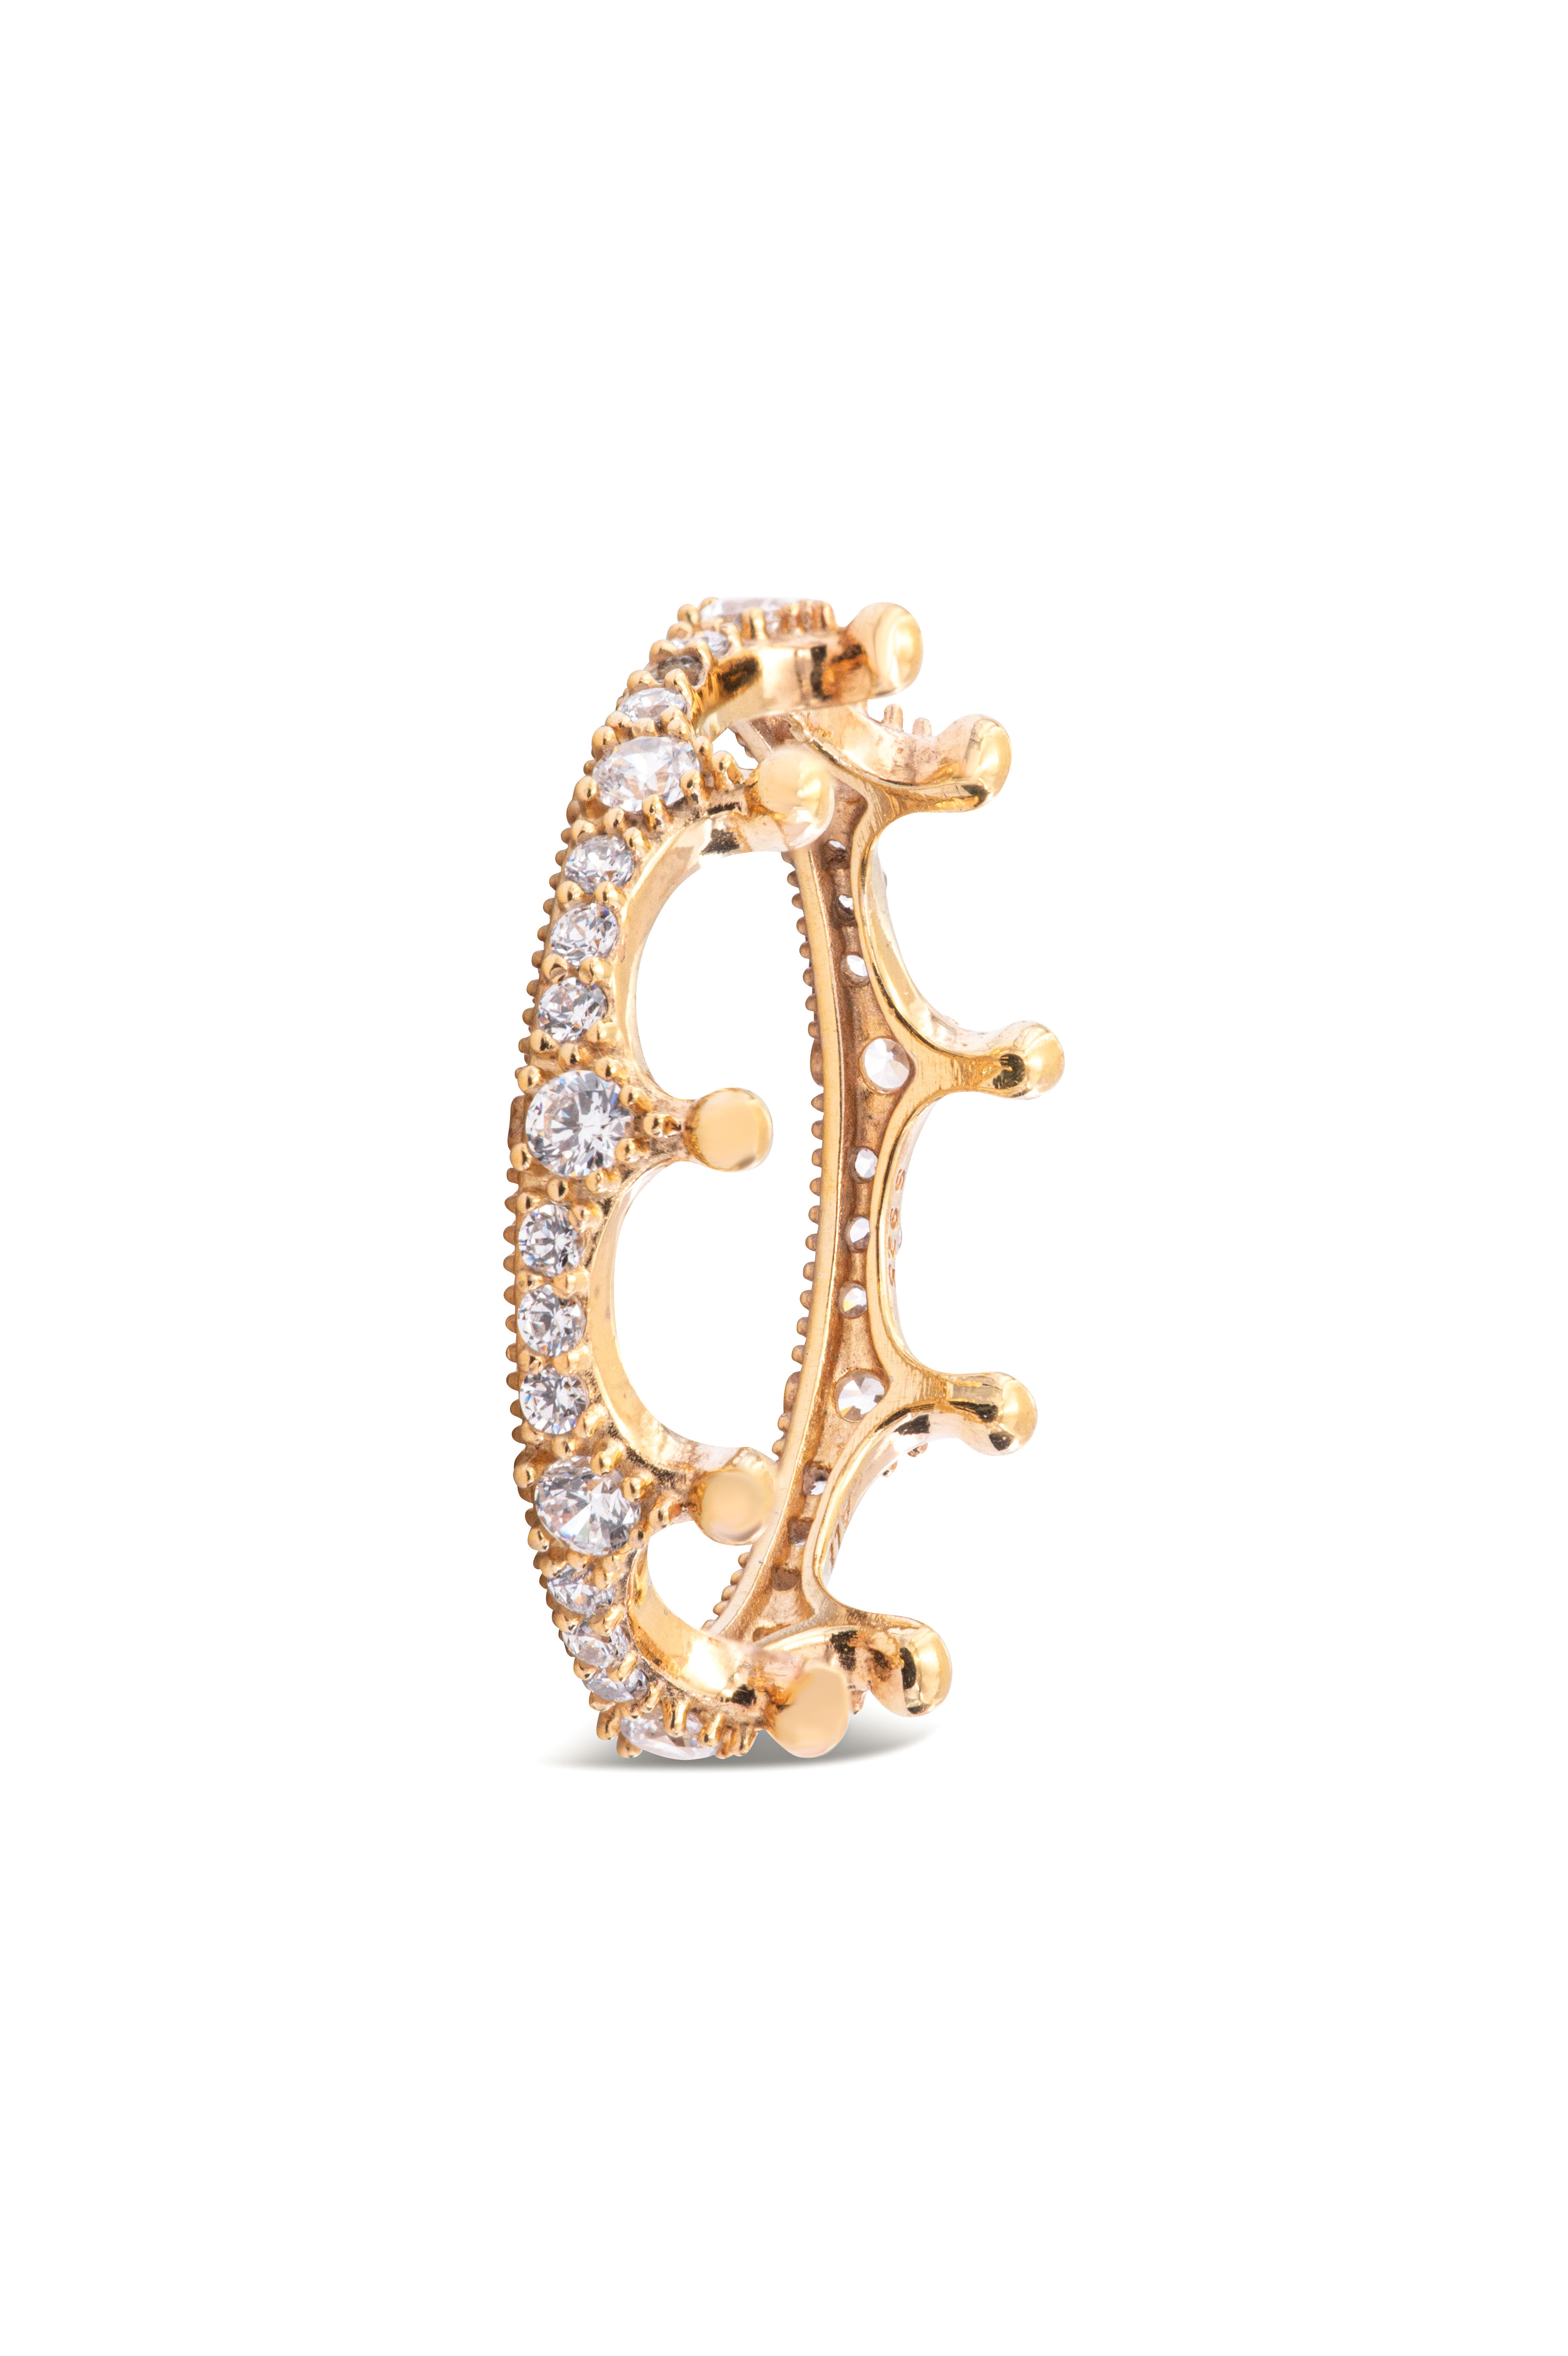 PANDORA Enchanted Crown Ring - 167119CZ-50